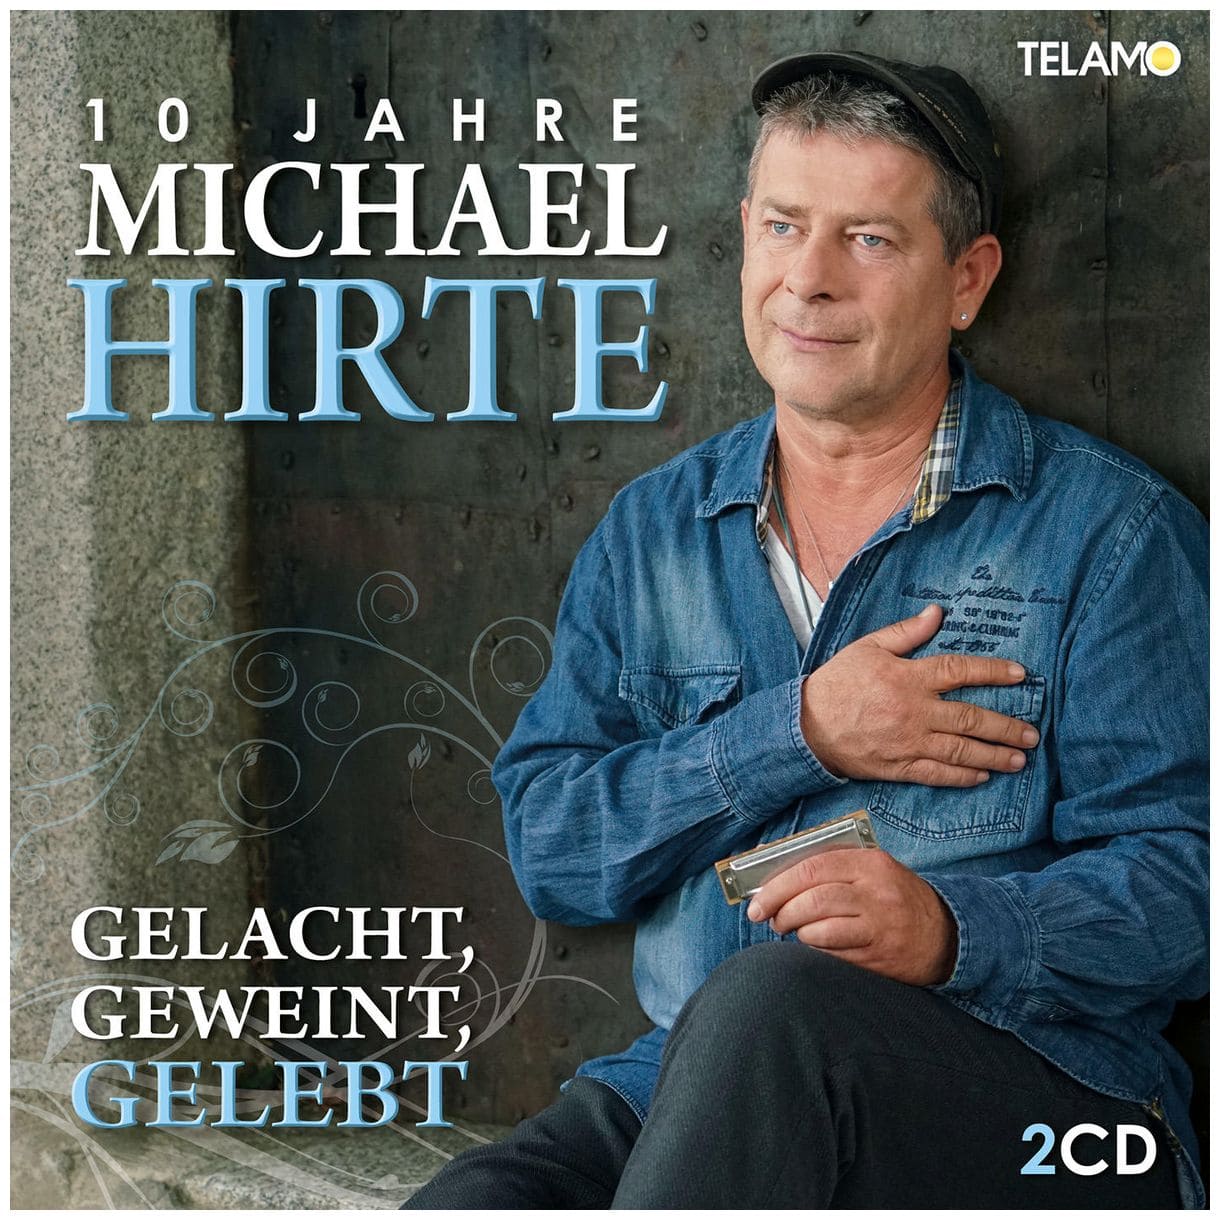 Michael Hirte - Gelacht, Geweint, Gelebt-10 Jahre Michael Hirte 